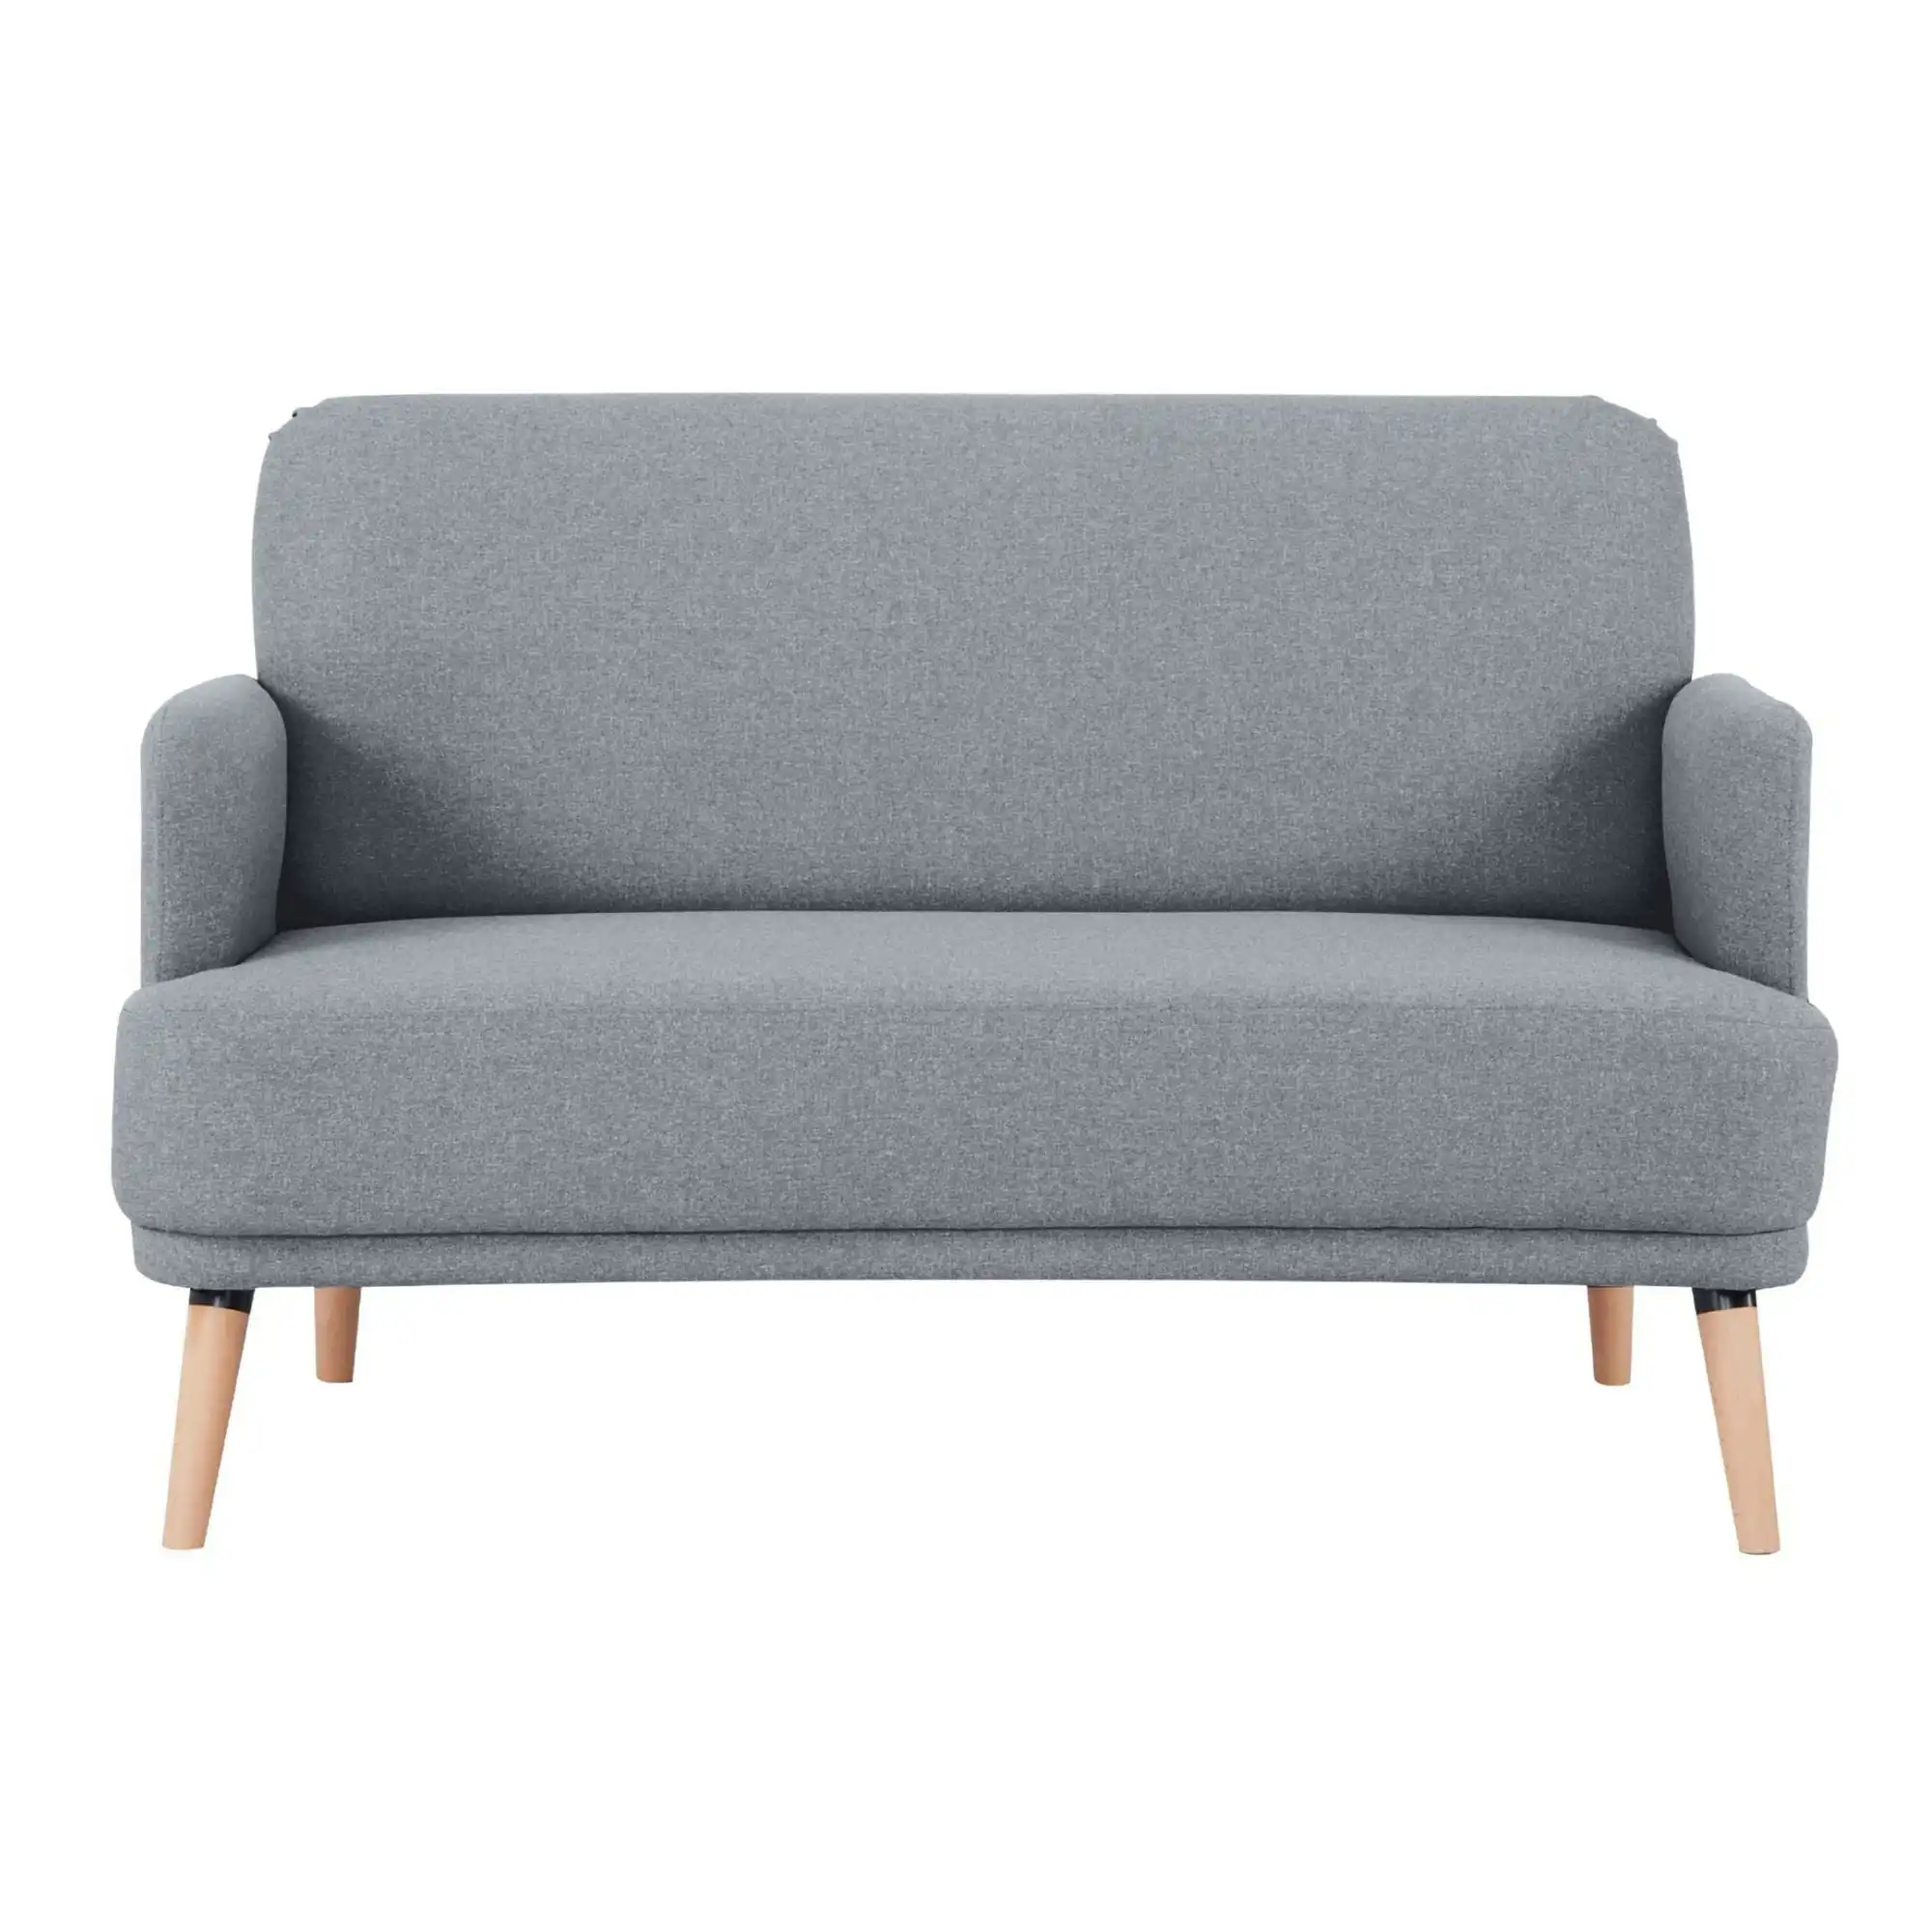 Brianna 2 Seater Fabric Sofa